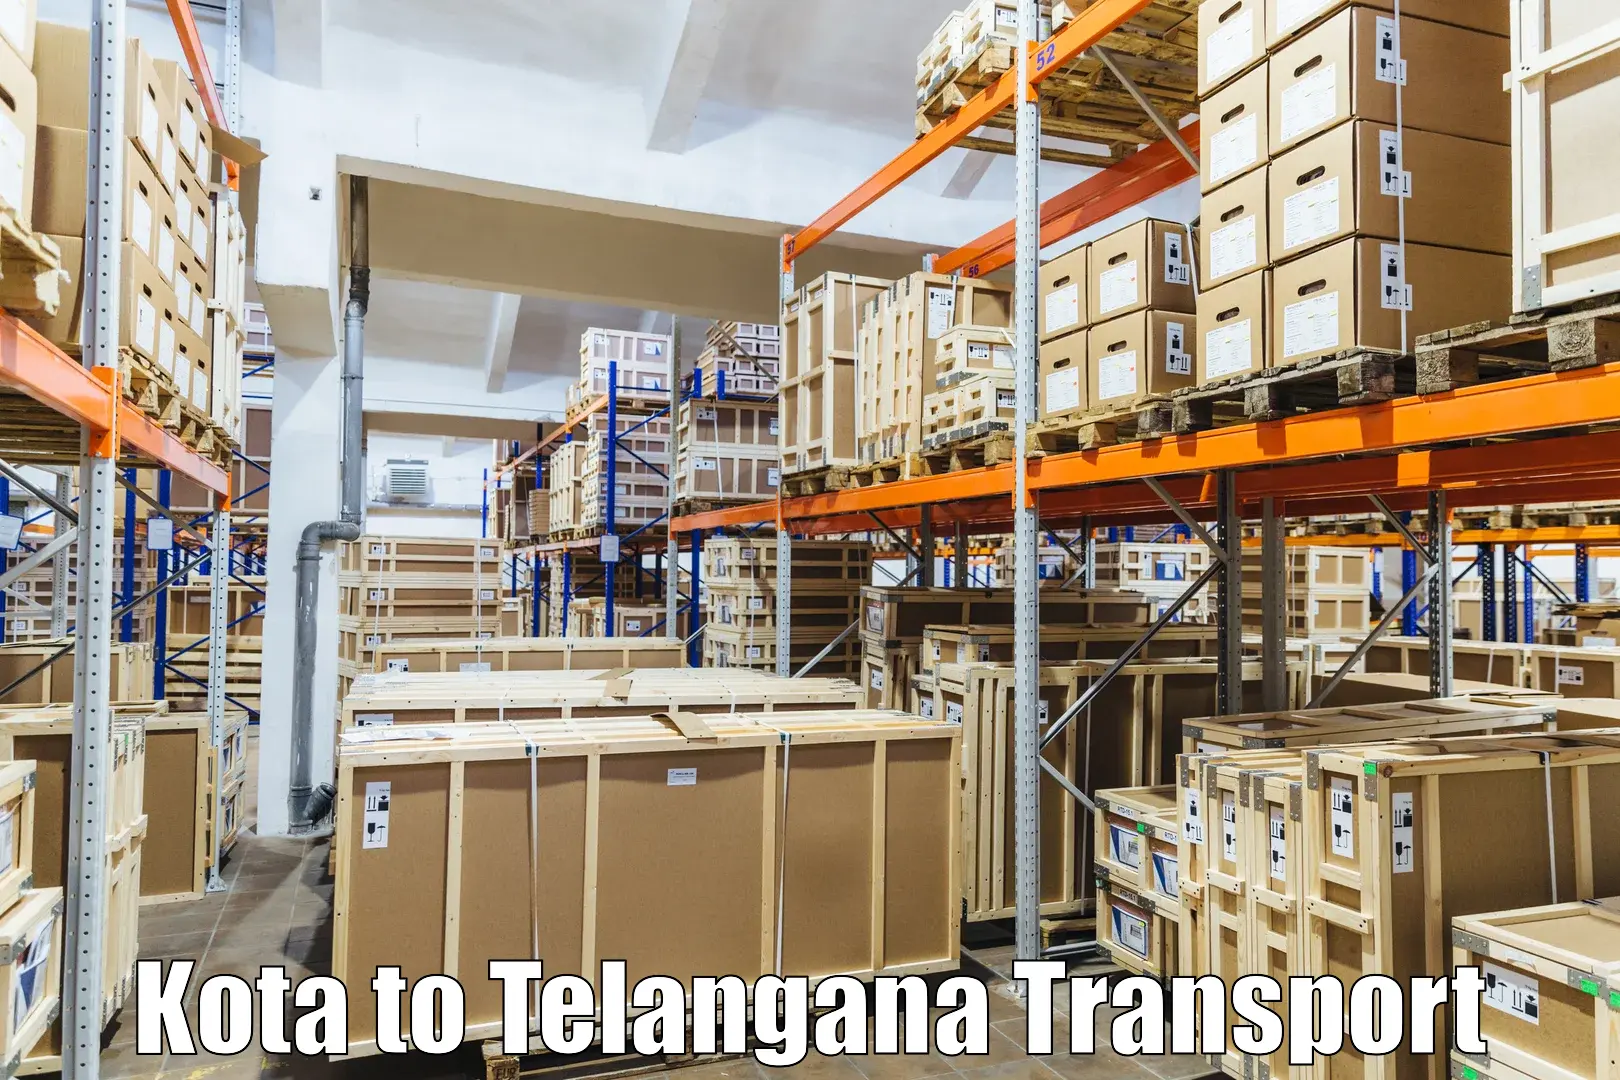 Online transport booking in Kota to Telangana